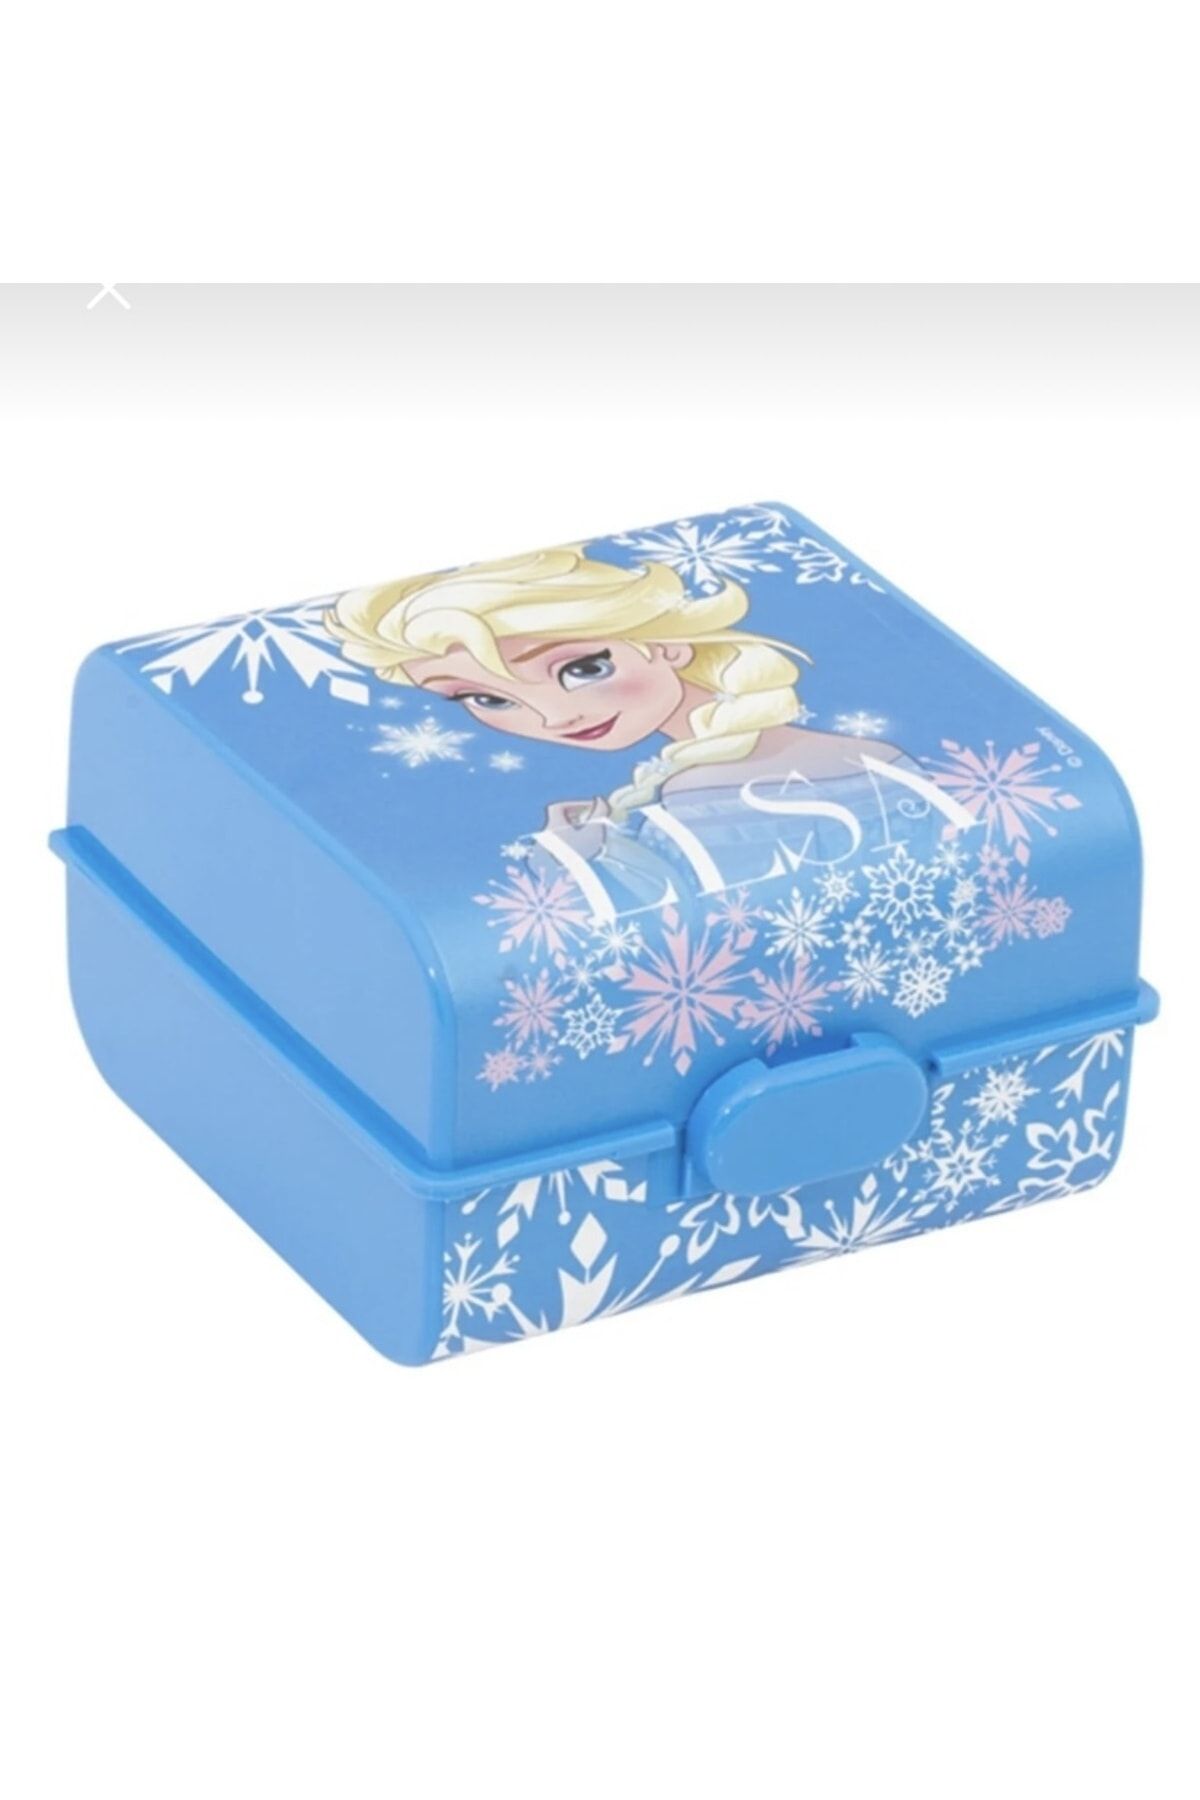 Herevin Lisanslı Beslenme Kutusu Beslenme Kabı Lunch Box Elsa